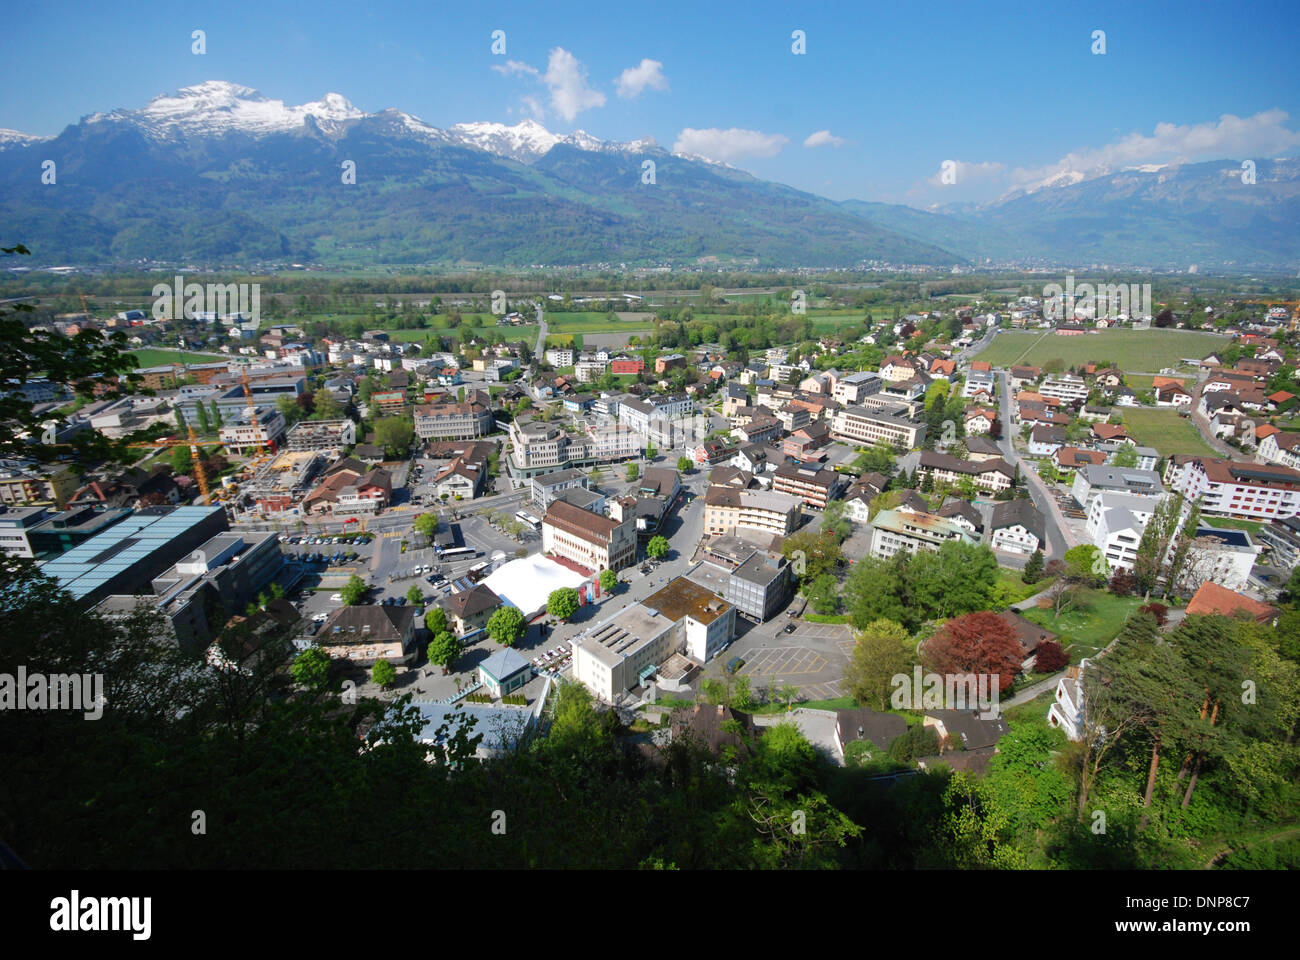 View over Vaduz, Liechtenstein, with Swiss mountains in the distance Stock Photo